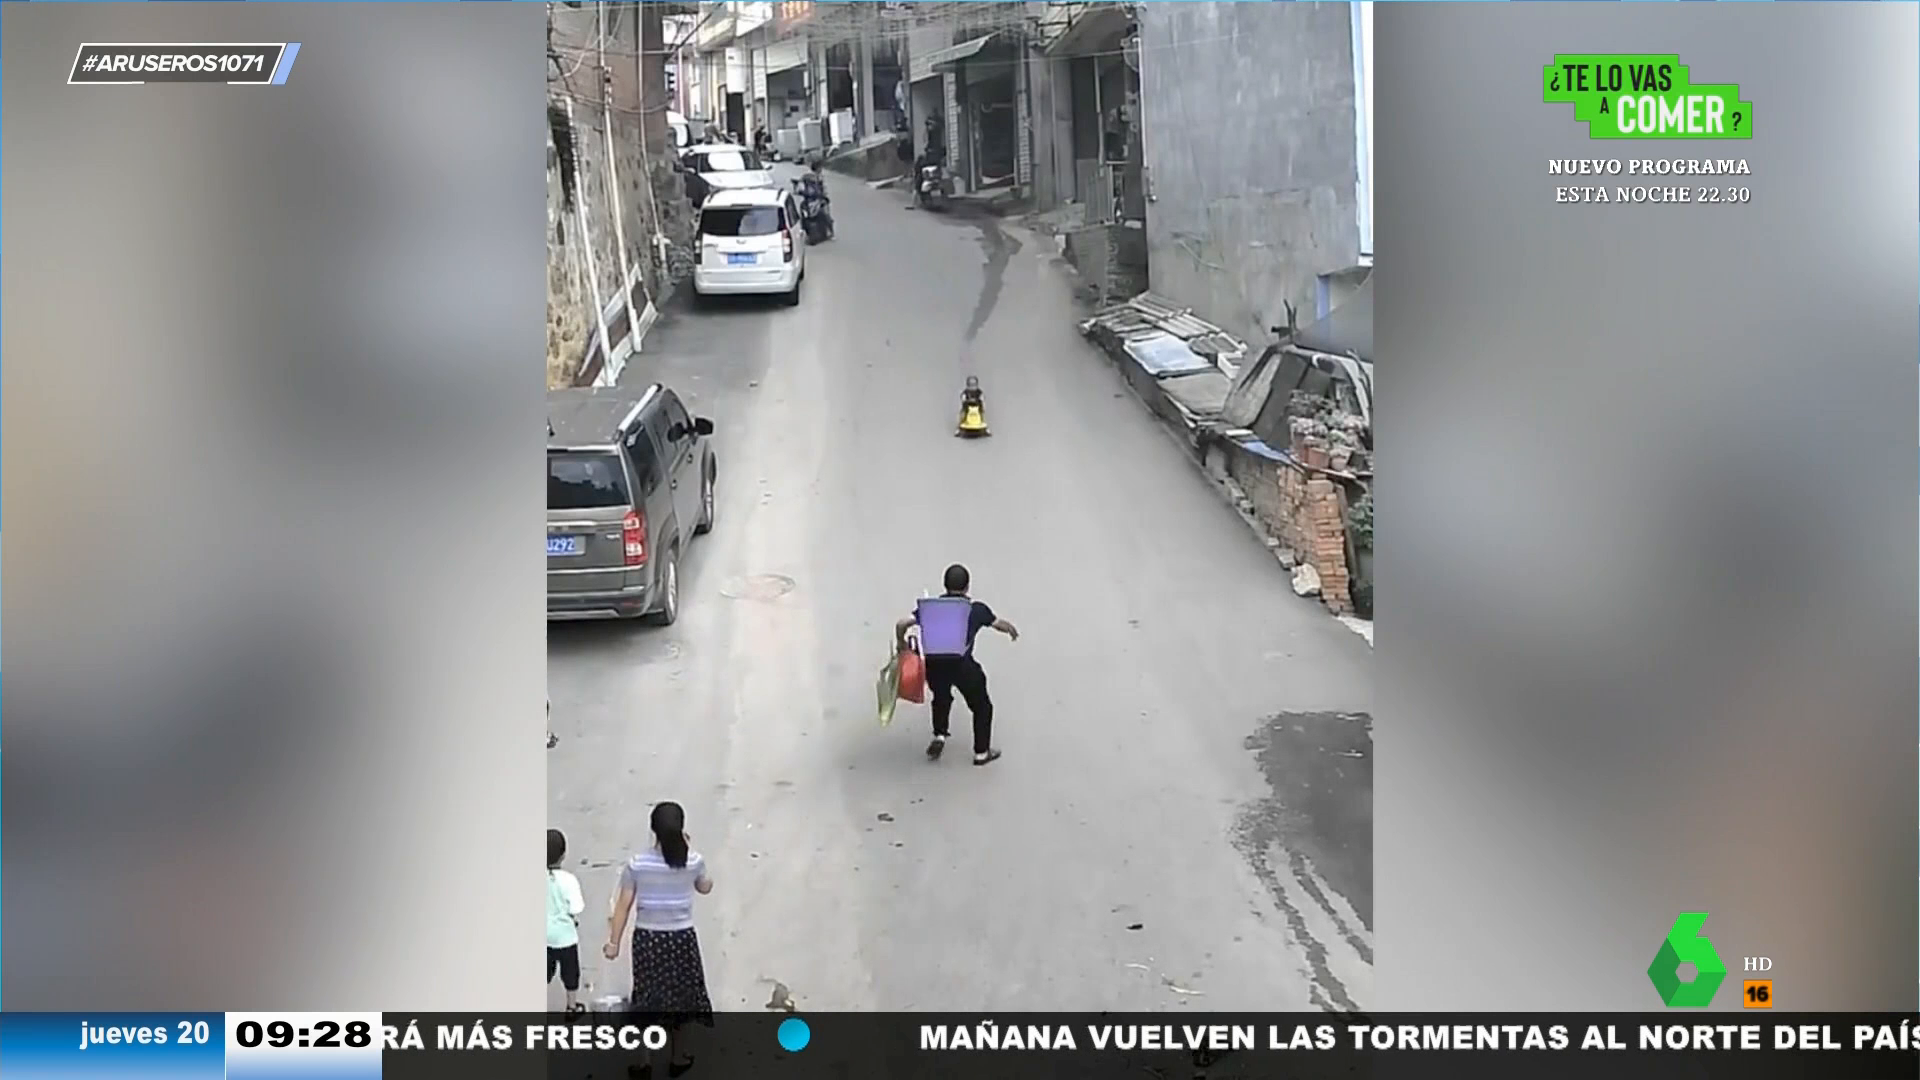 Niño de 2 años perdió la vida tras accidentarse en su moto de juguete